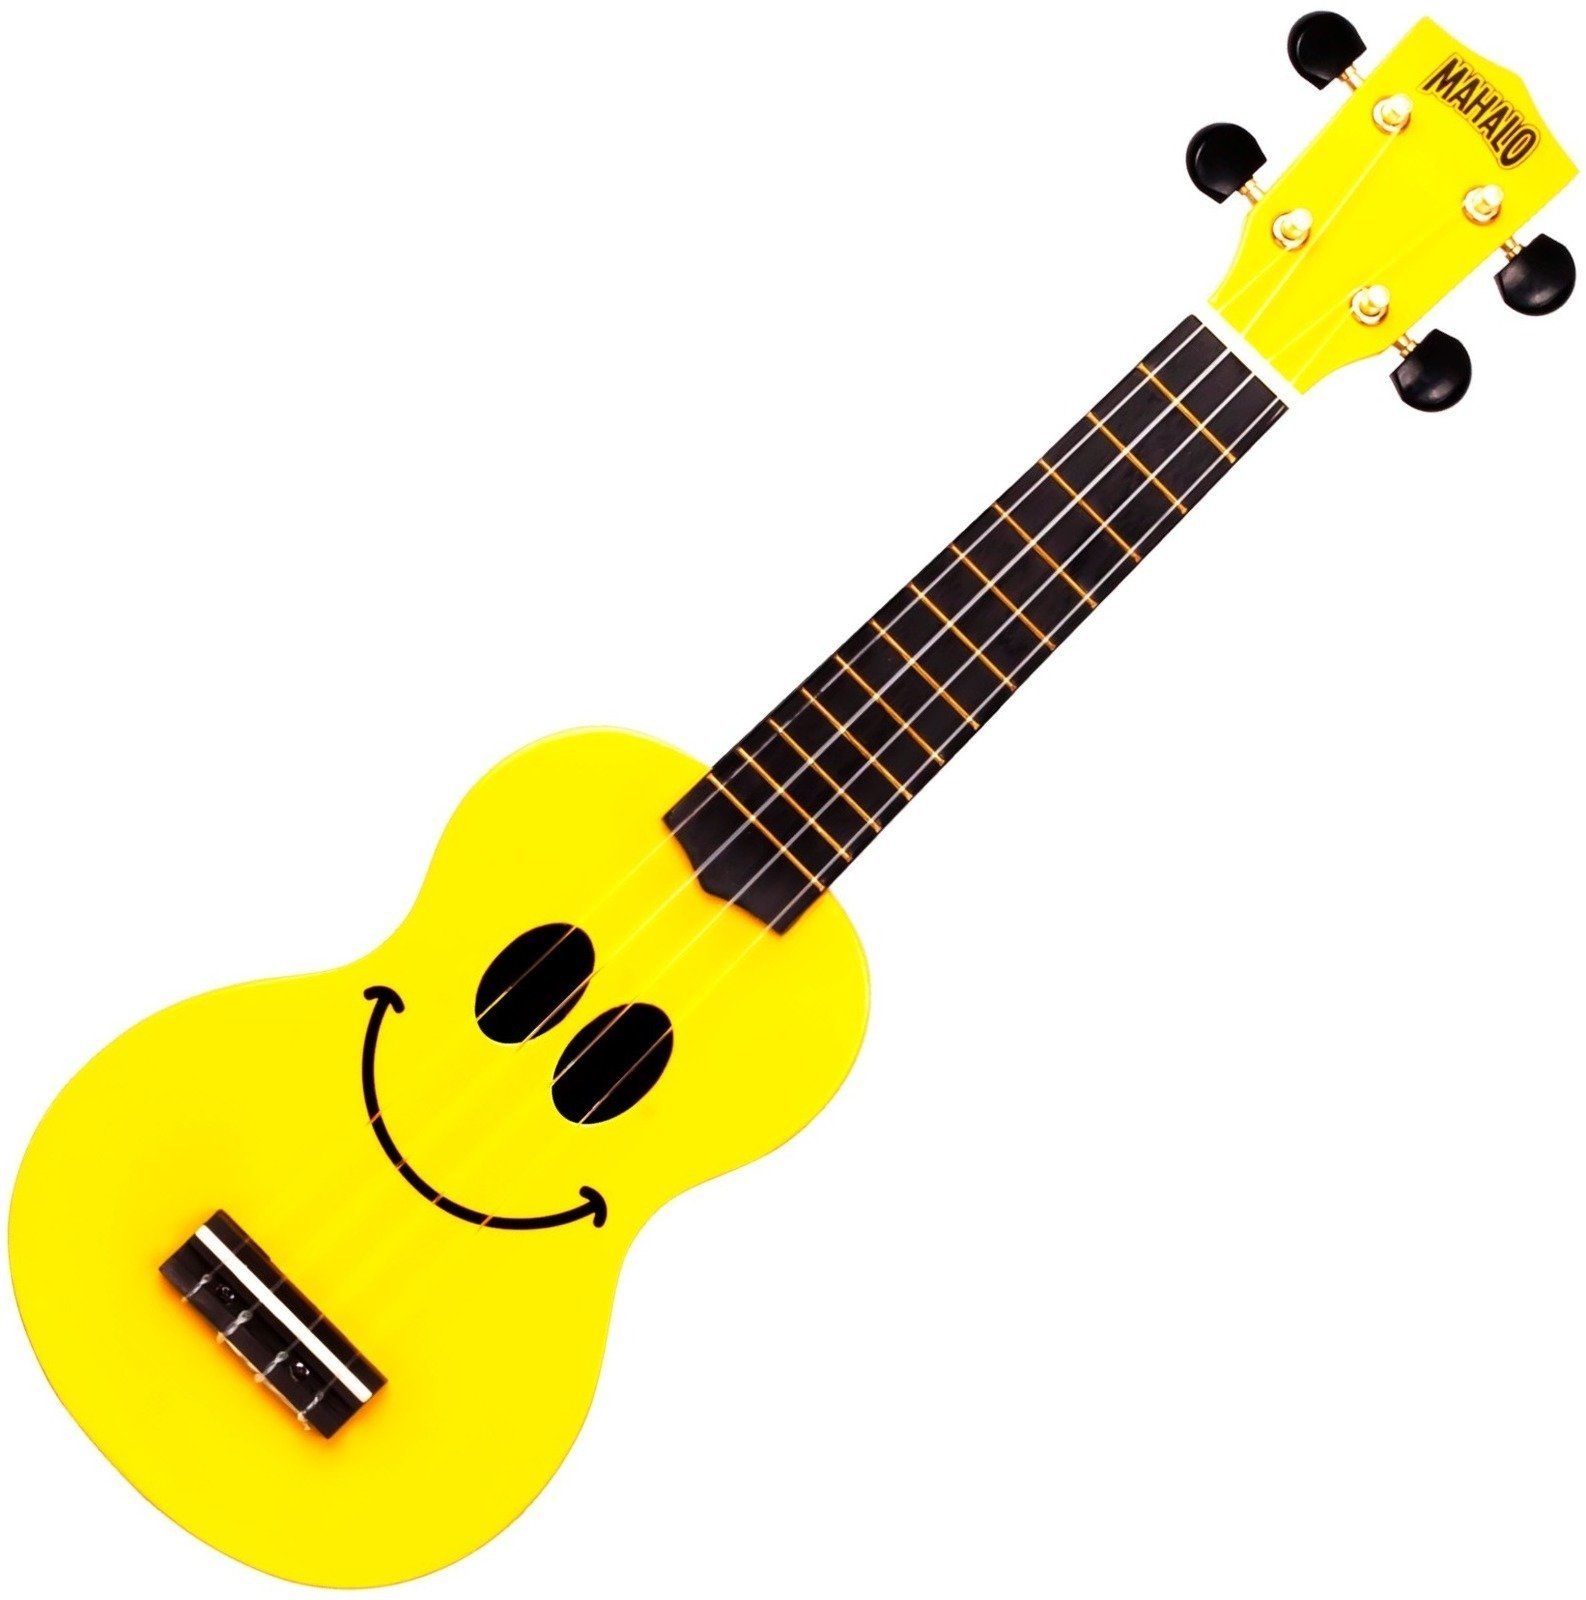 Sopránové ukulele Mahalo U-SMILE Sopránové ukulele Yellow